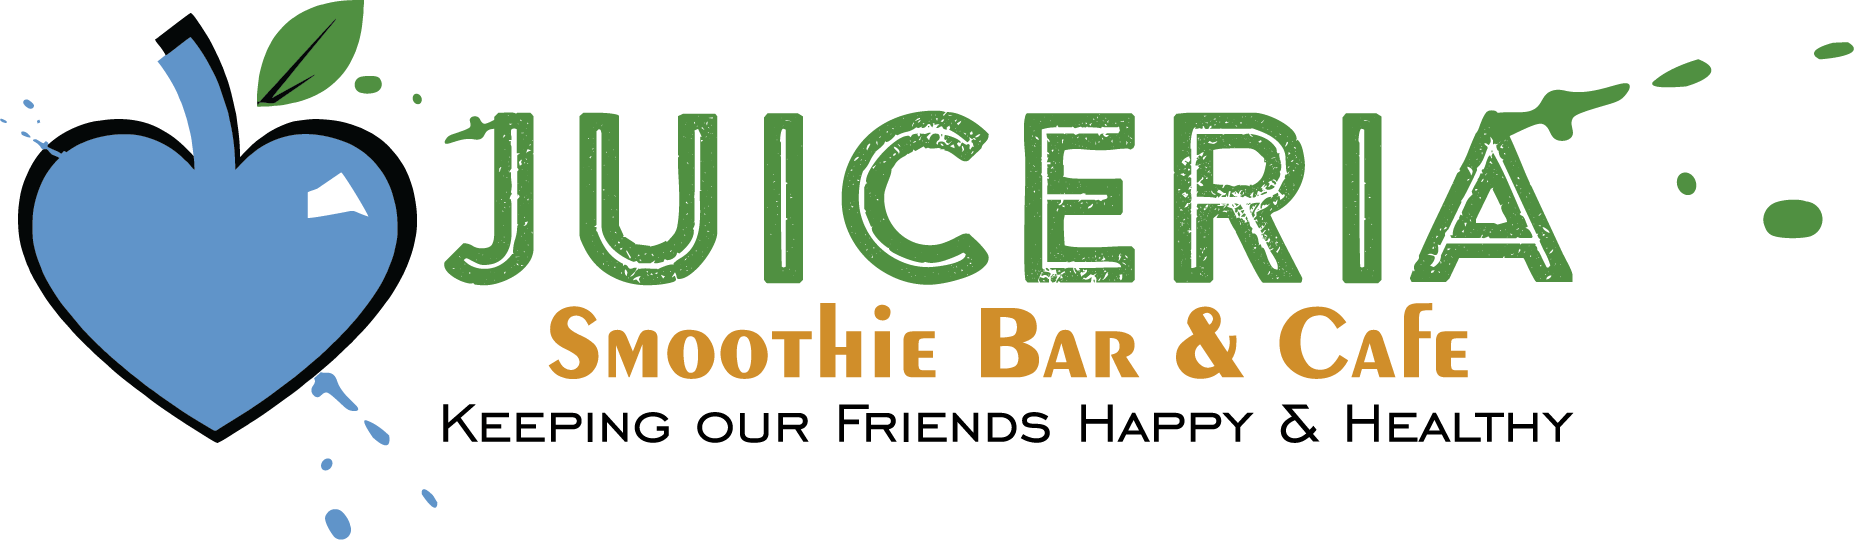 Juiceria Smoothie Bar and Cafe